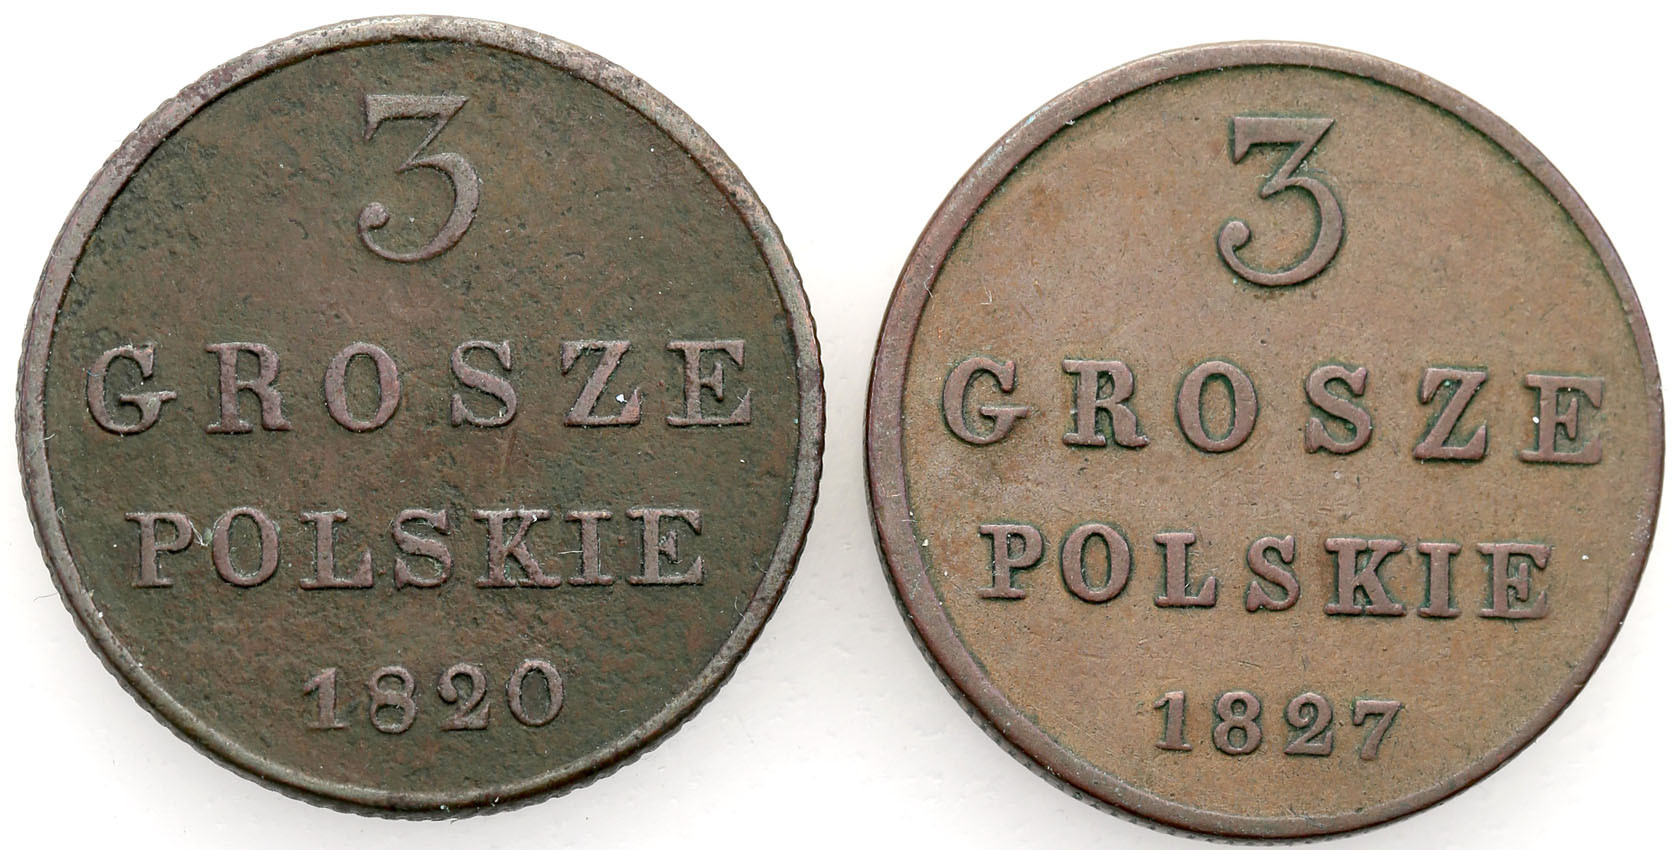 Polska XlX w. / Rosja. 3 Grosze Polskie (Trojak) 1820-1827, Warszawa – zestaw 2 szt.